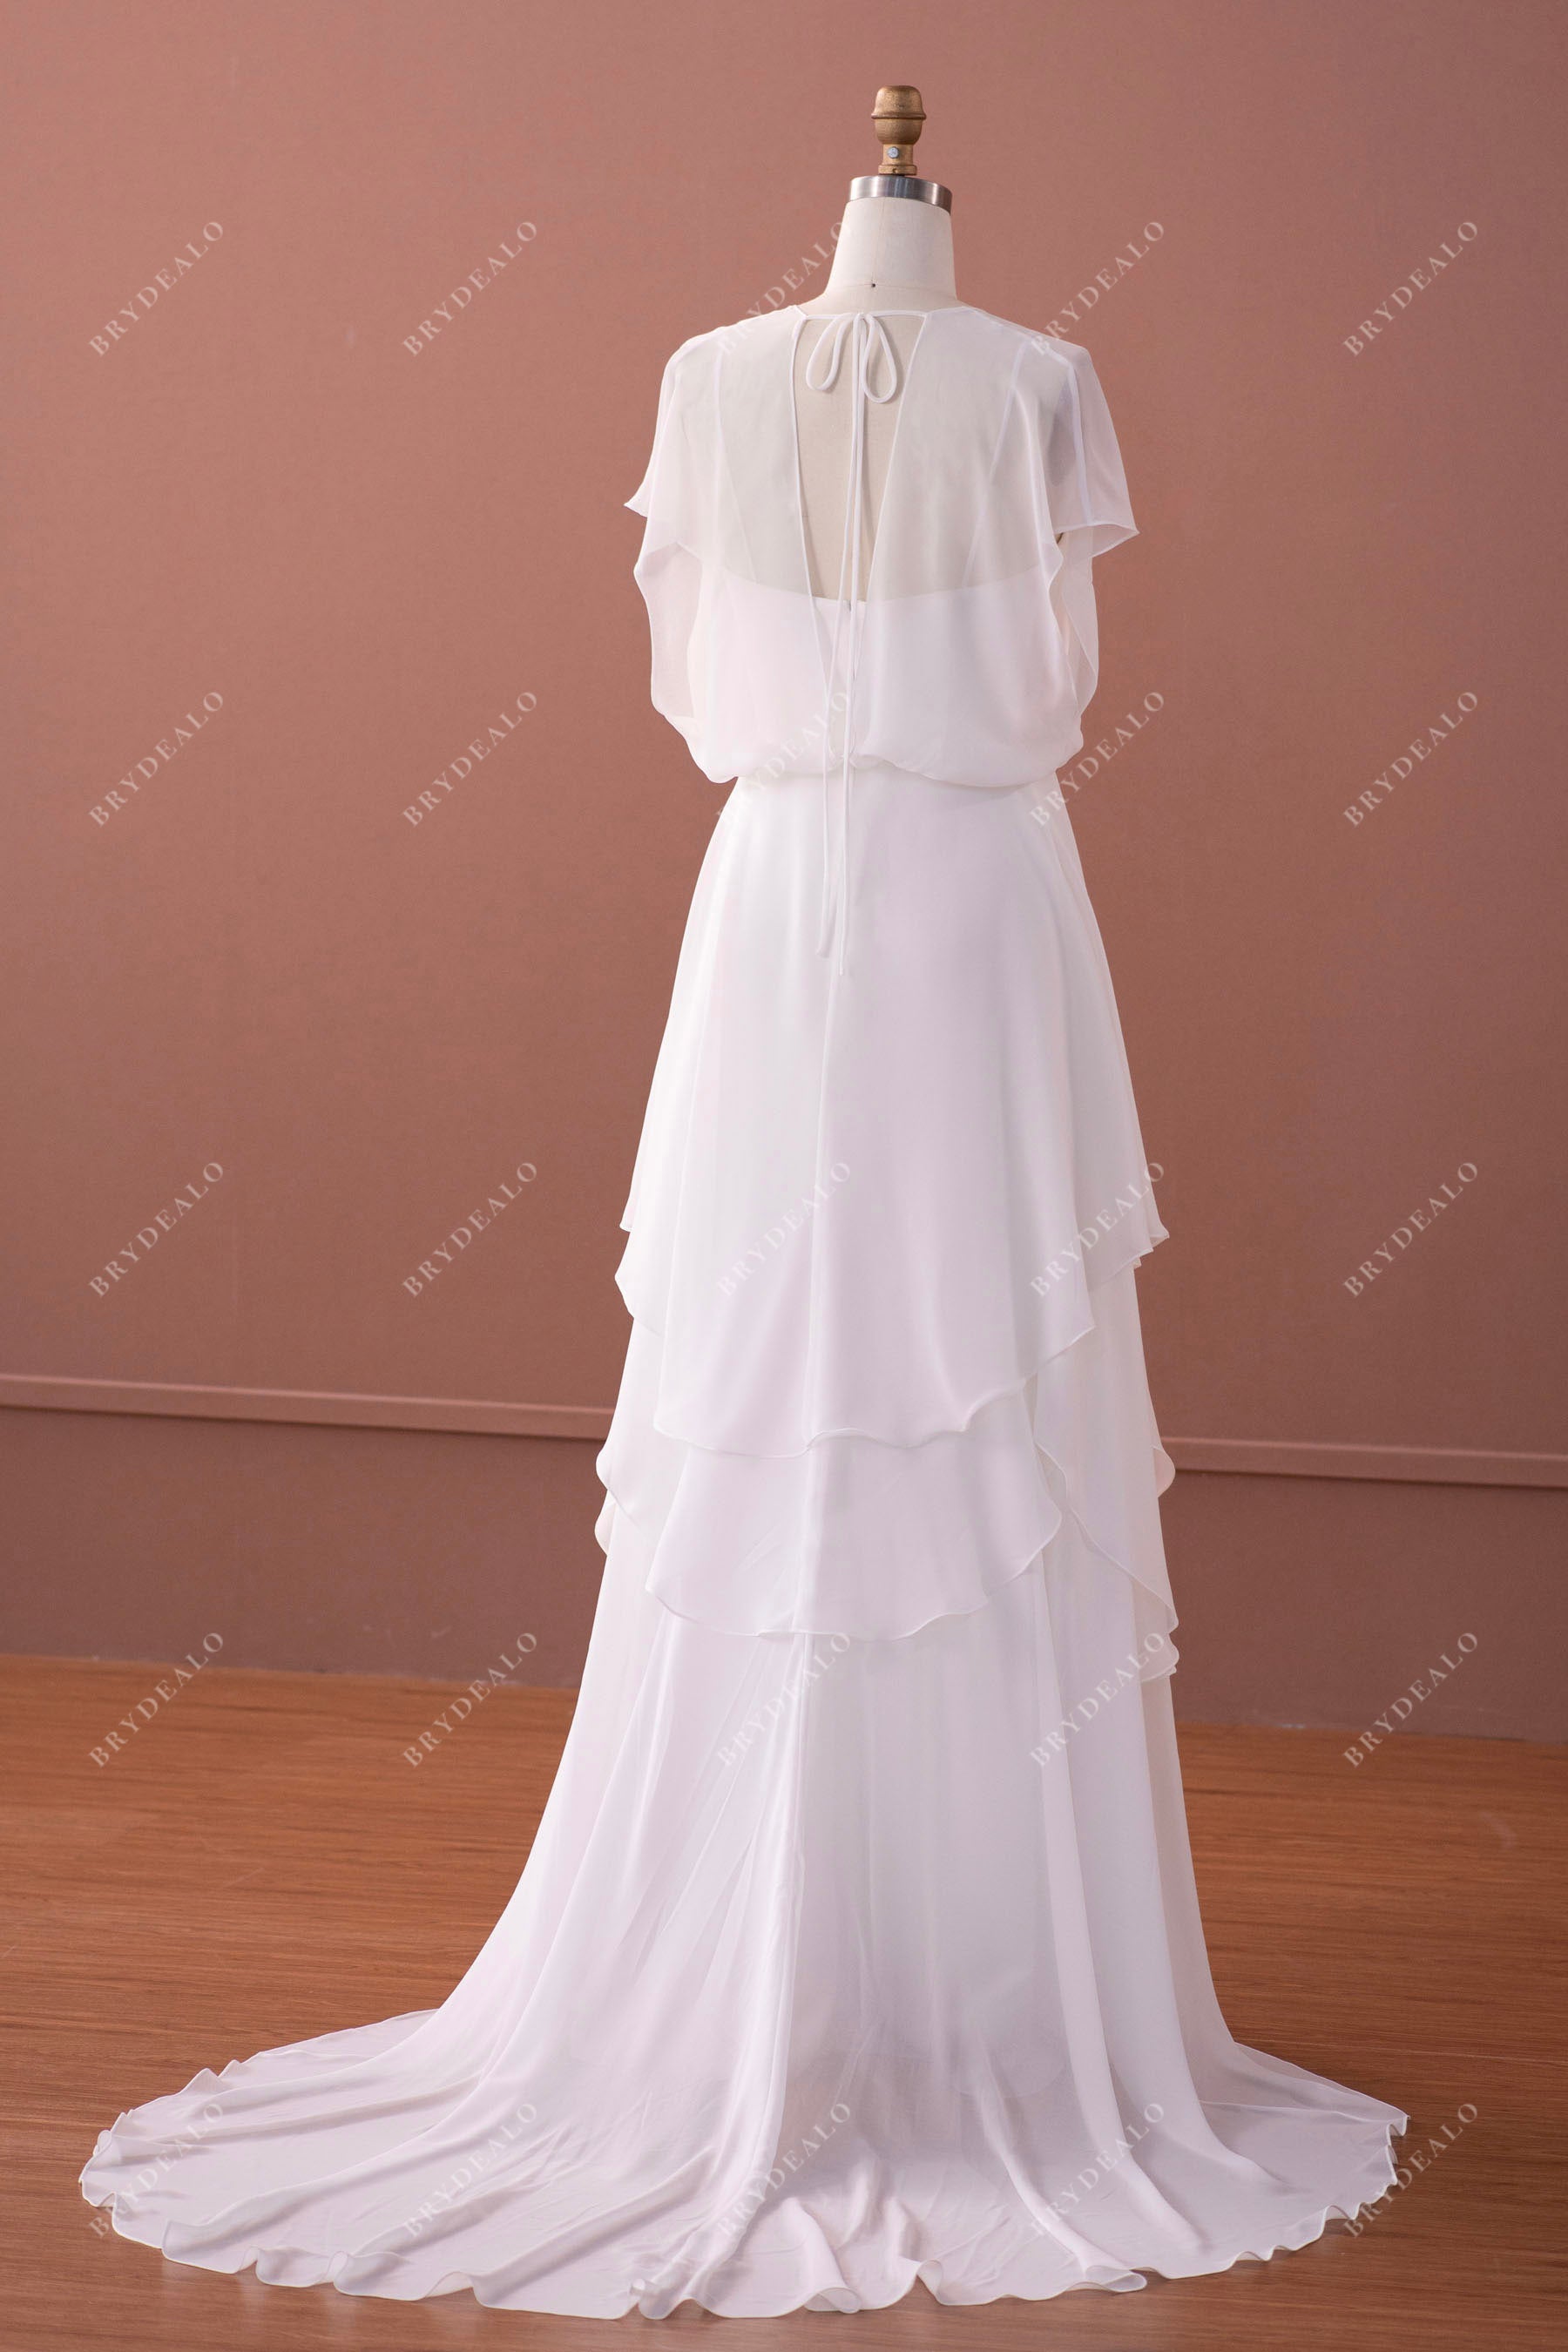 long chiffon wedding dress with jacket